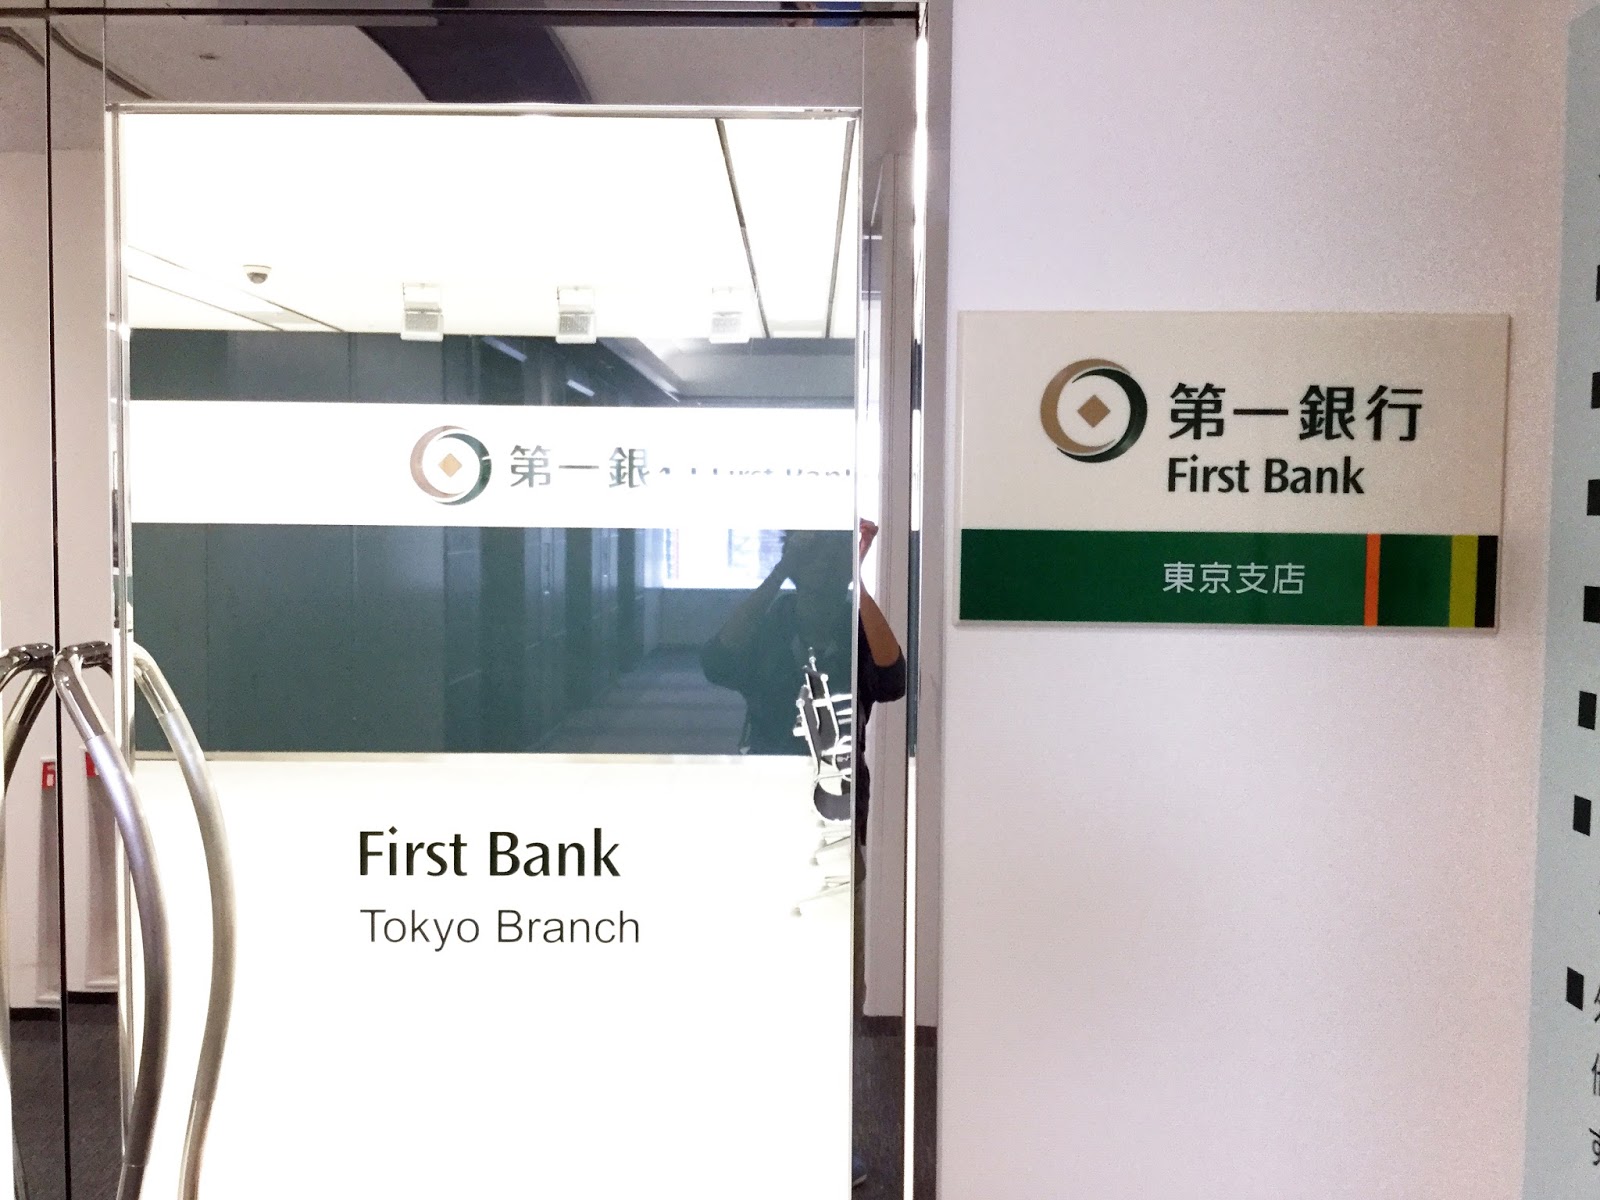 東京 第 一 銀行